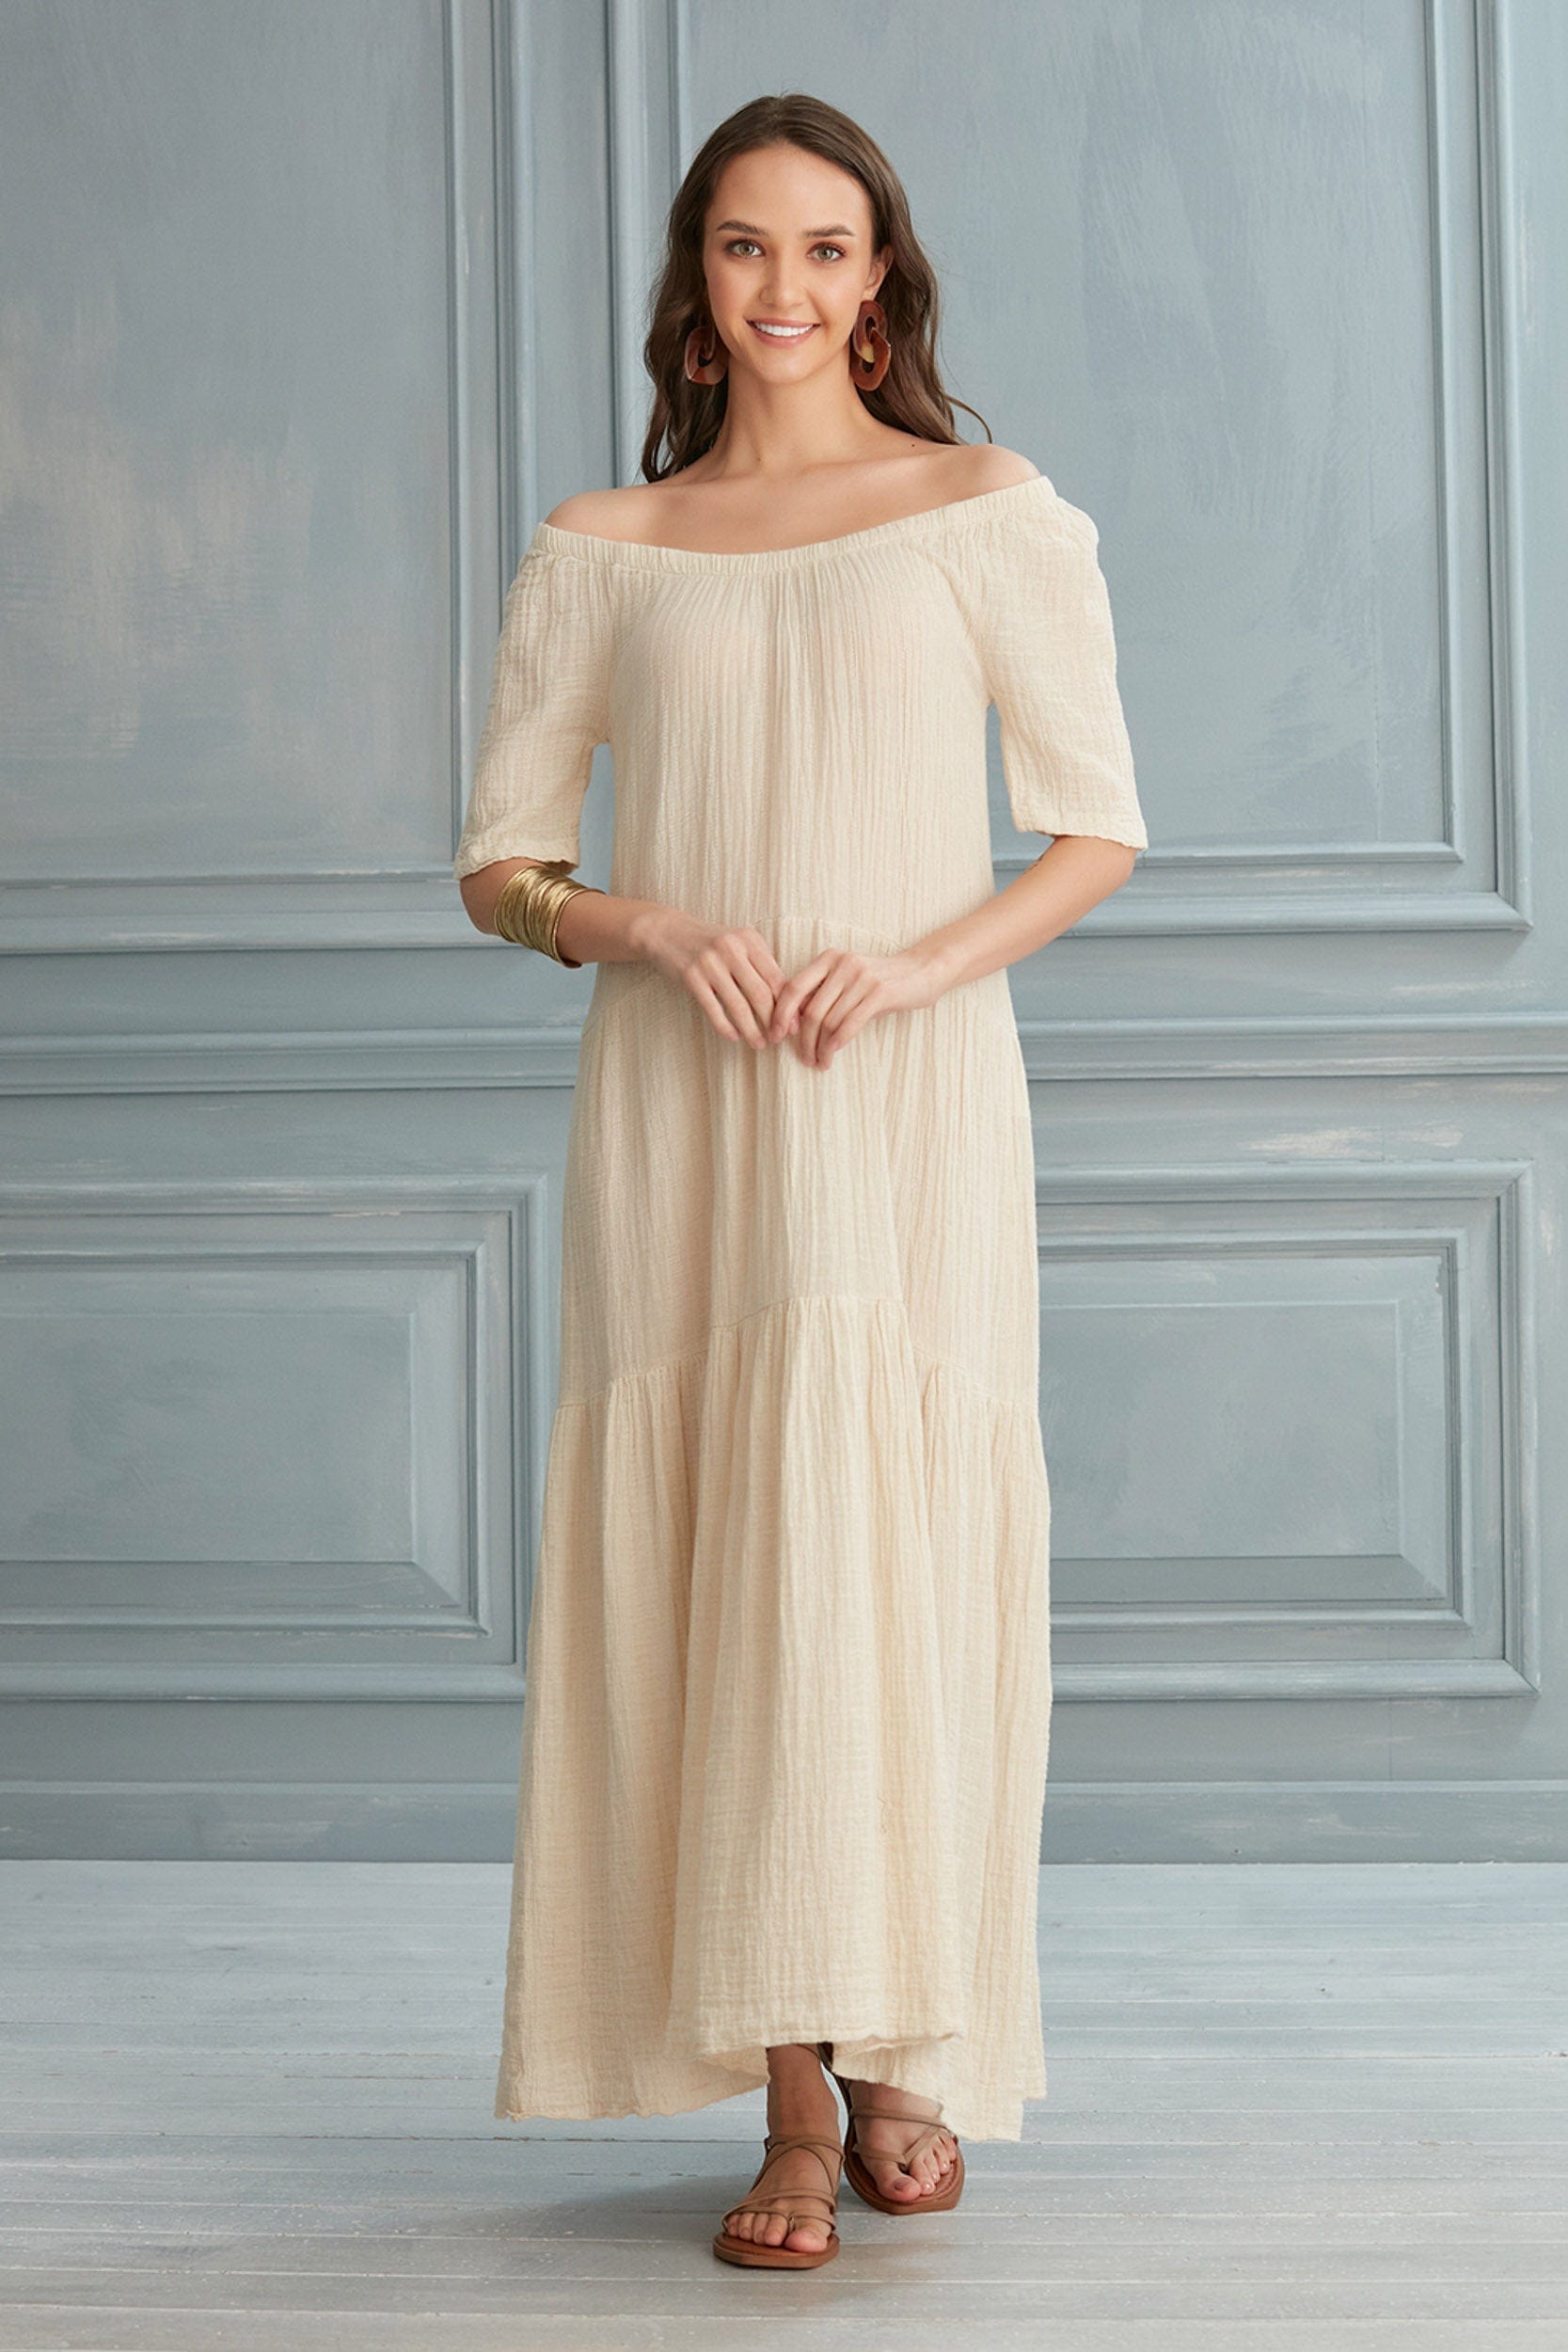 Begonville Elbise Isabella Midi Elbise - Keten Ekru